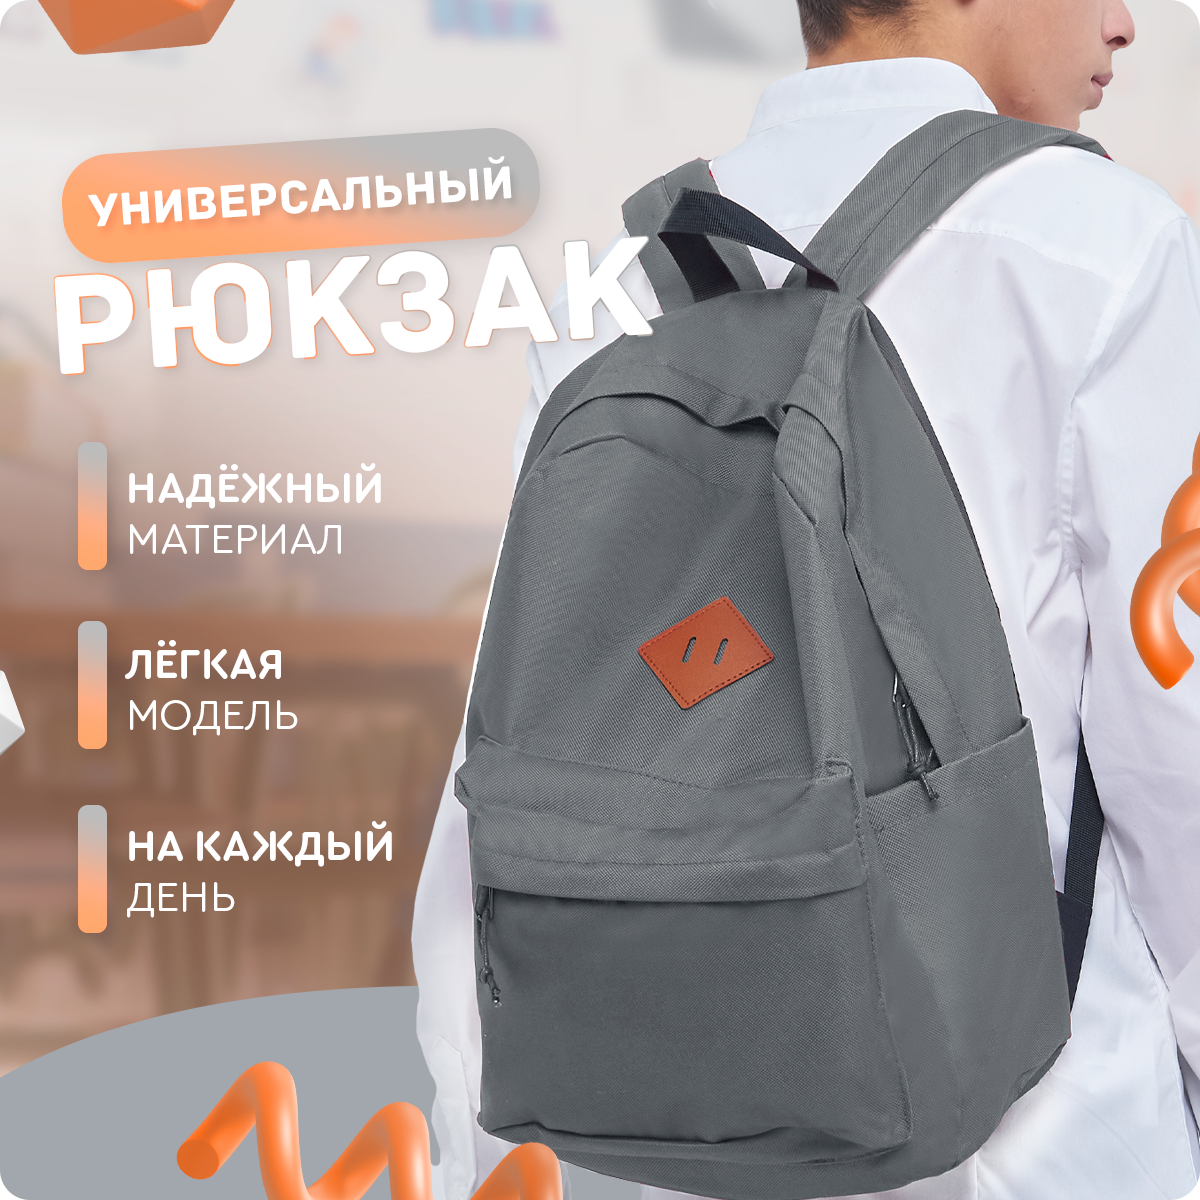 Рюкзак (серый) UrbanStorm городской, спортивный, туристический, повседневный / сумка \ школьный для мальчиков, девочек